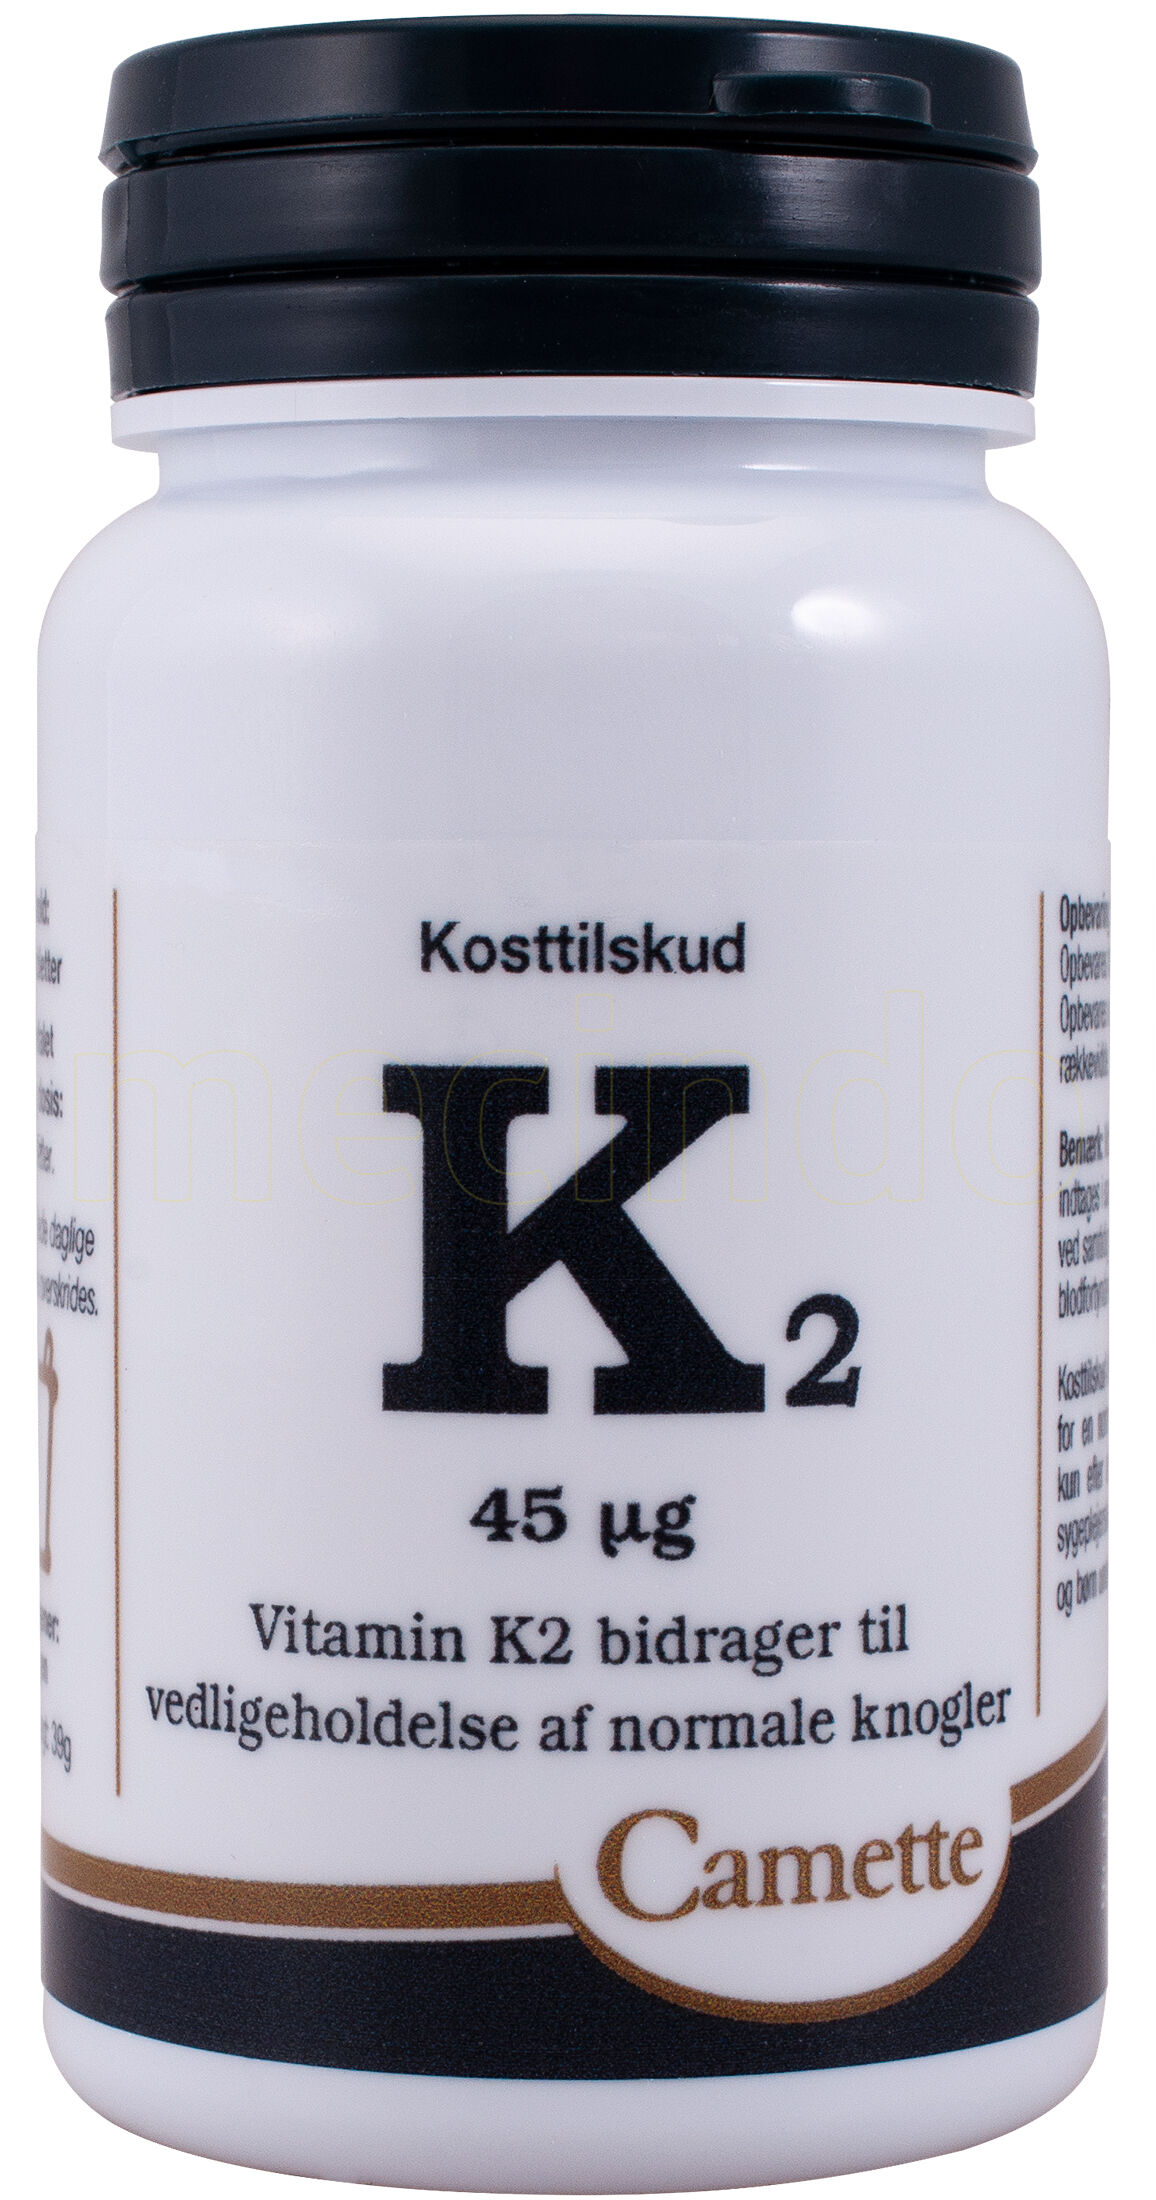 Camette K2 Vitamin 45 mcg. - 180 Tablett